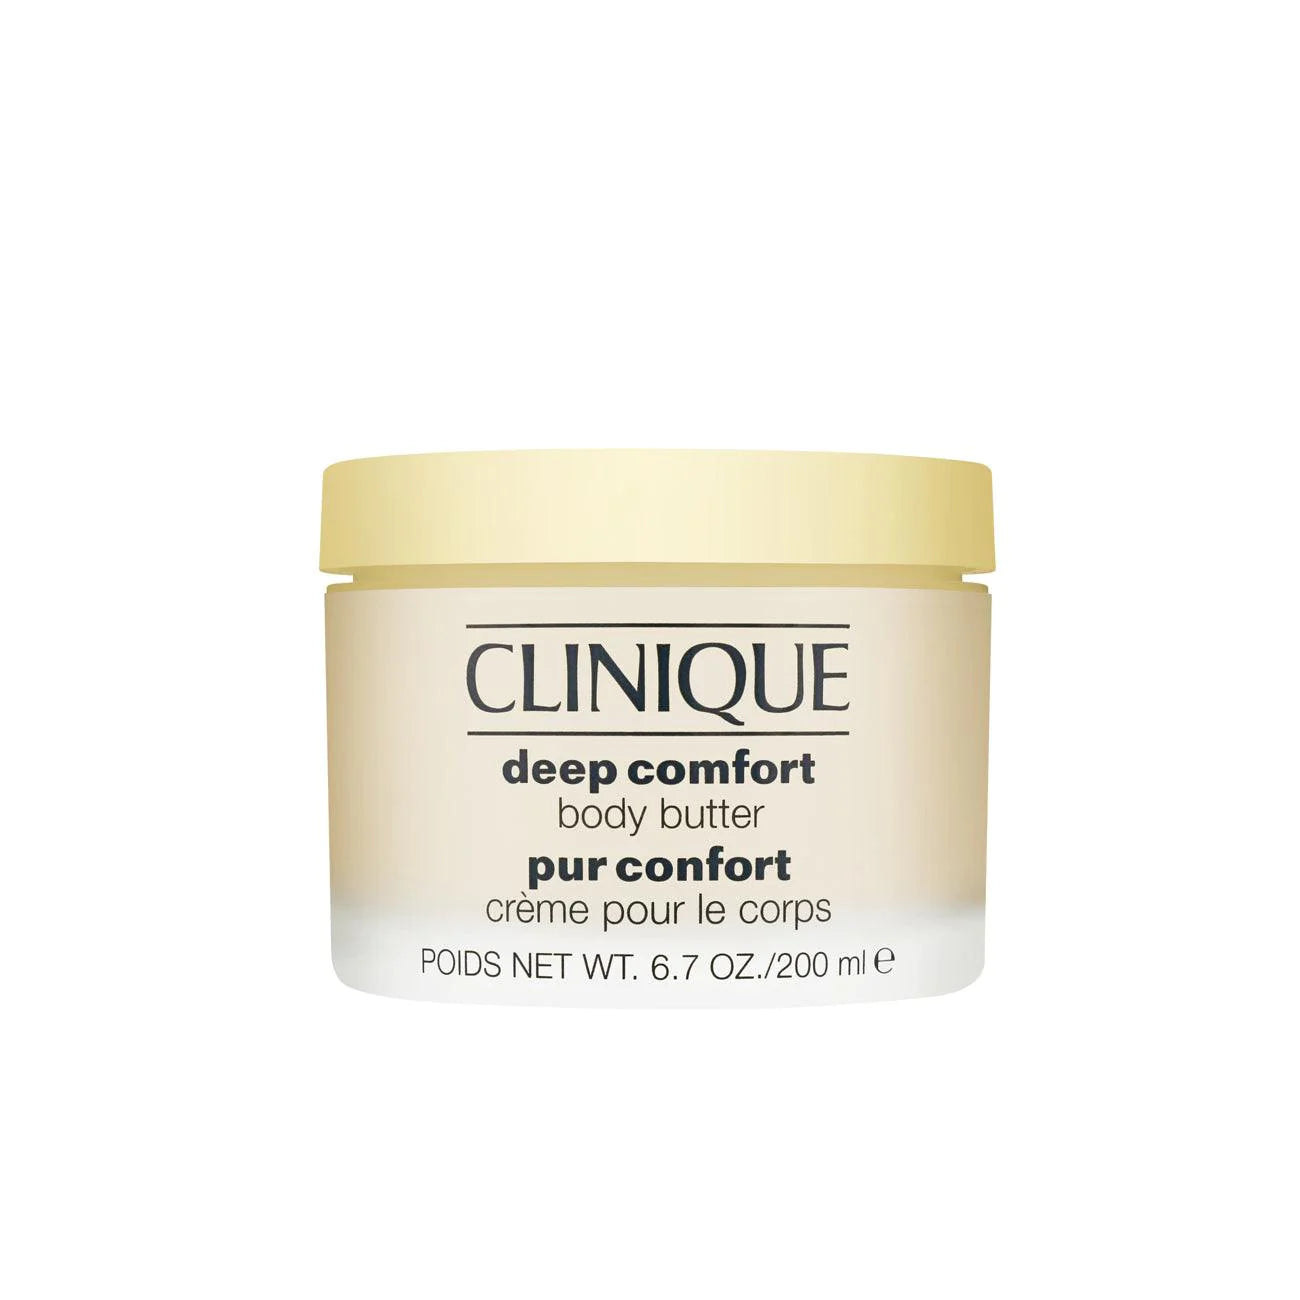 Clinique deep comfort body butter cream 